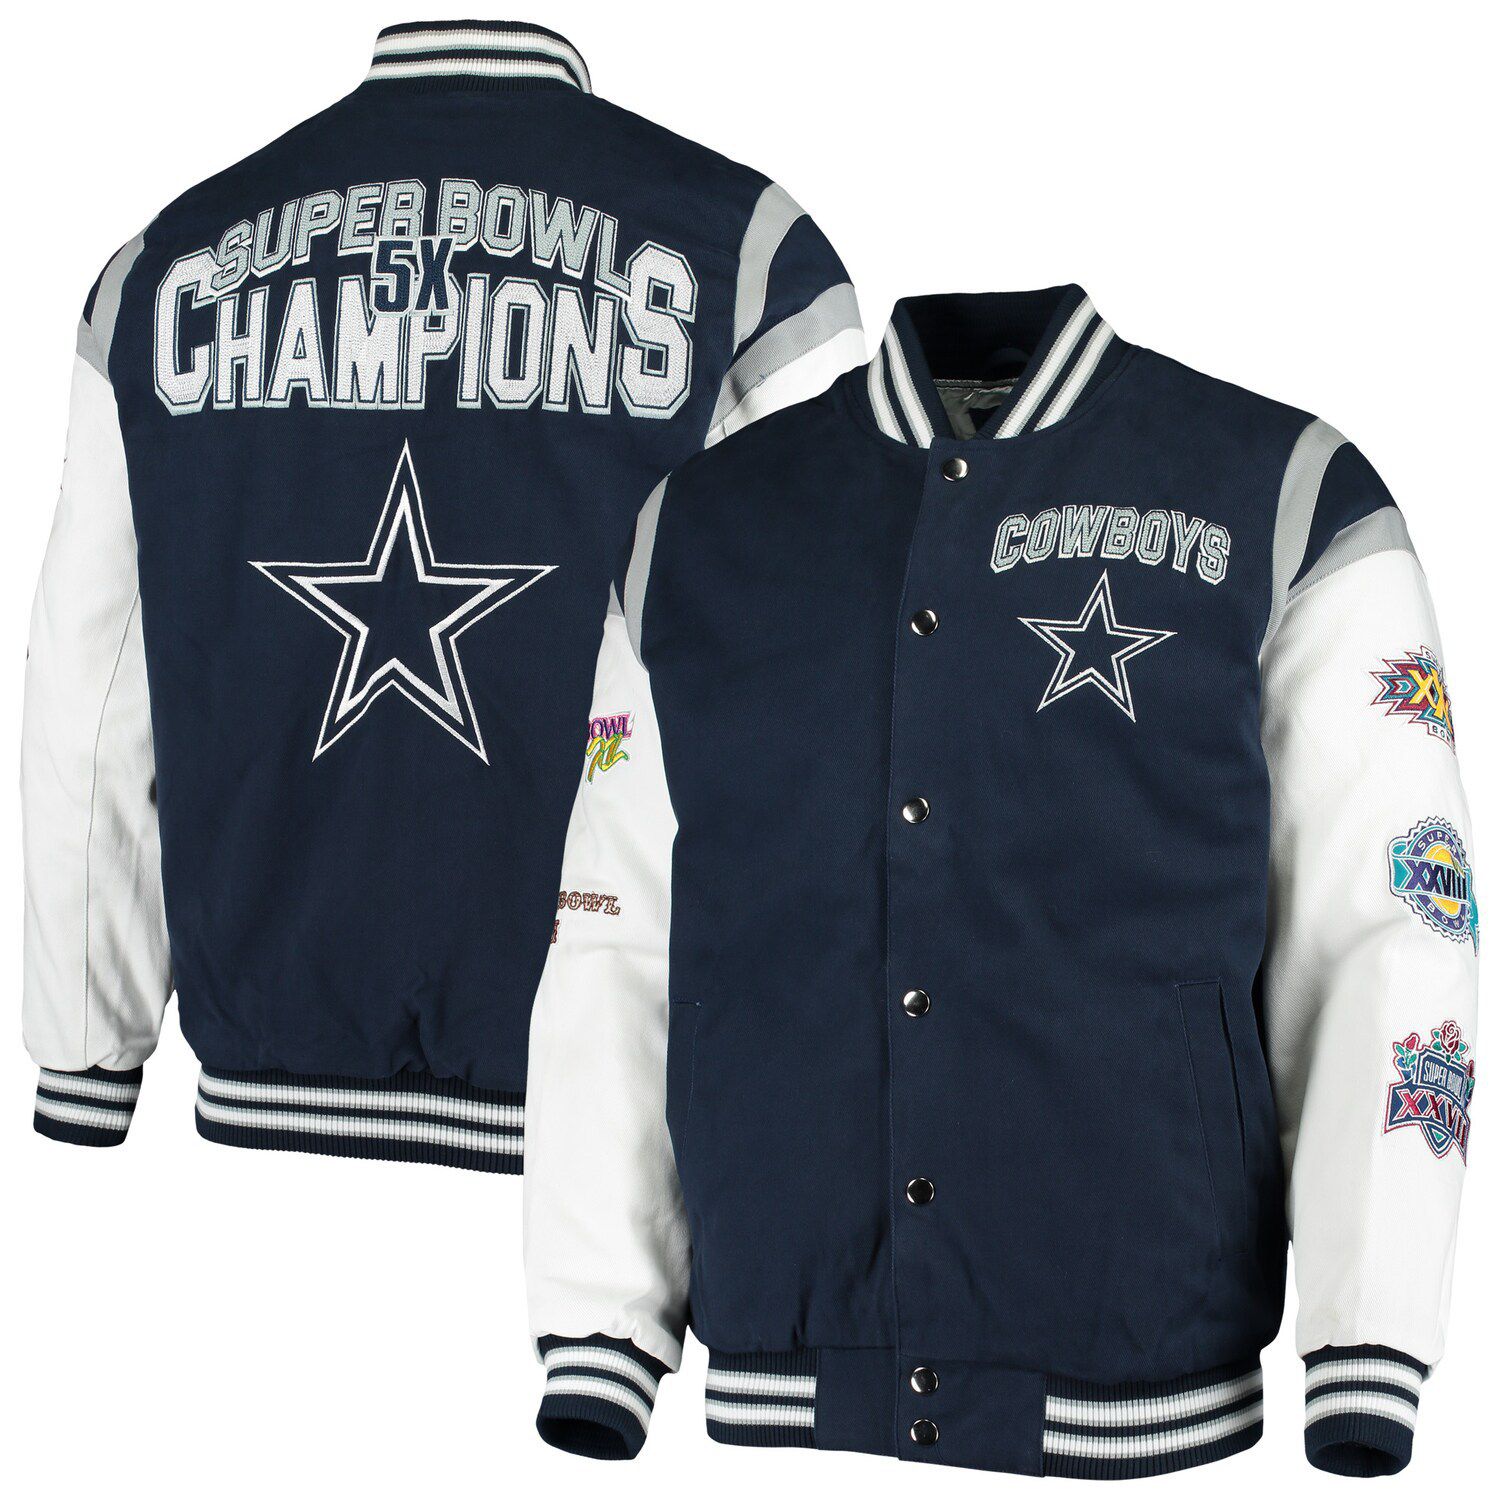 dallas cowboys championship jackets